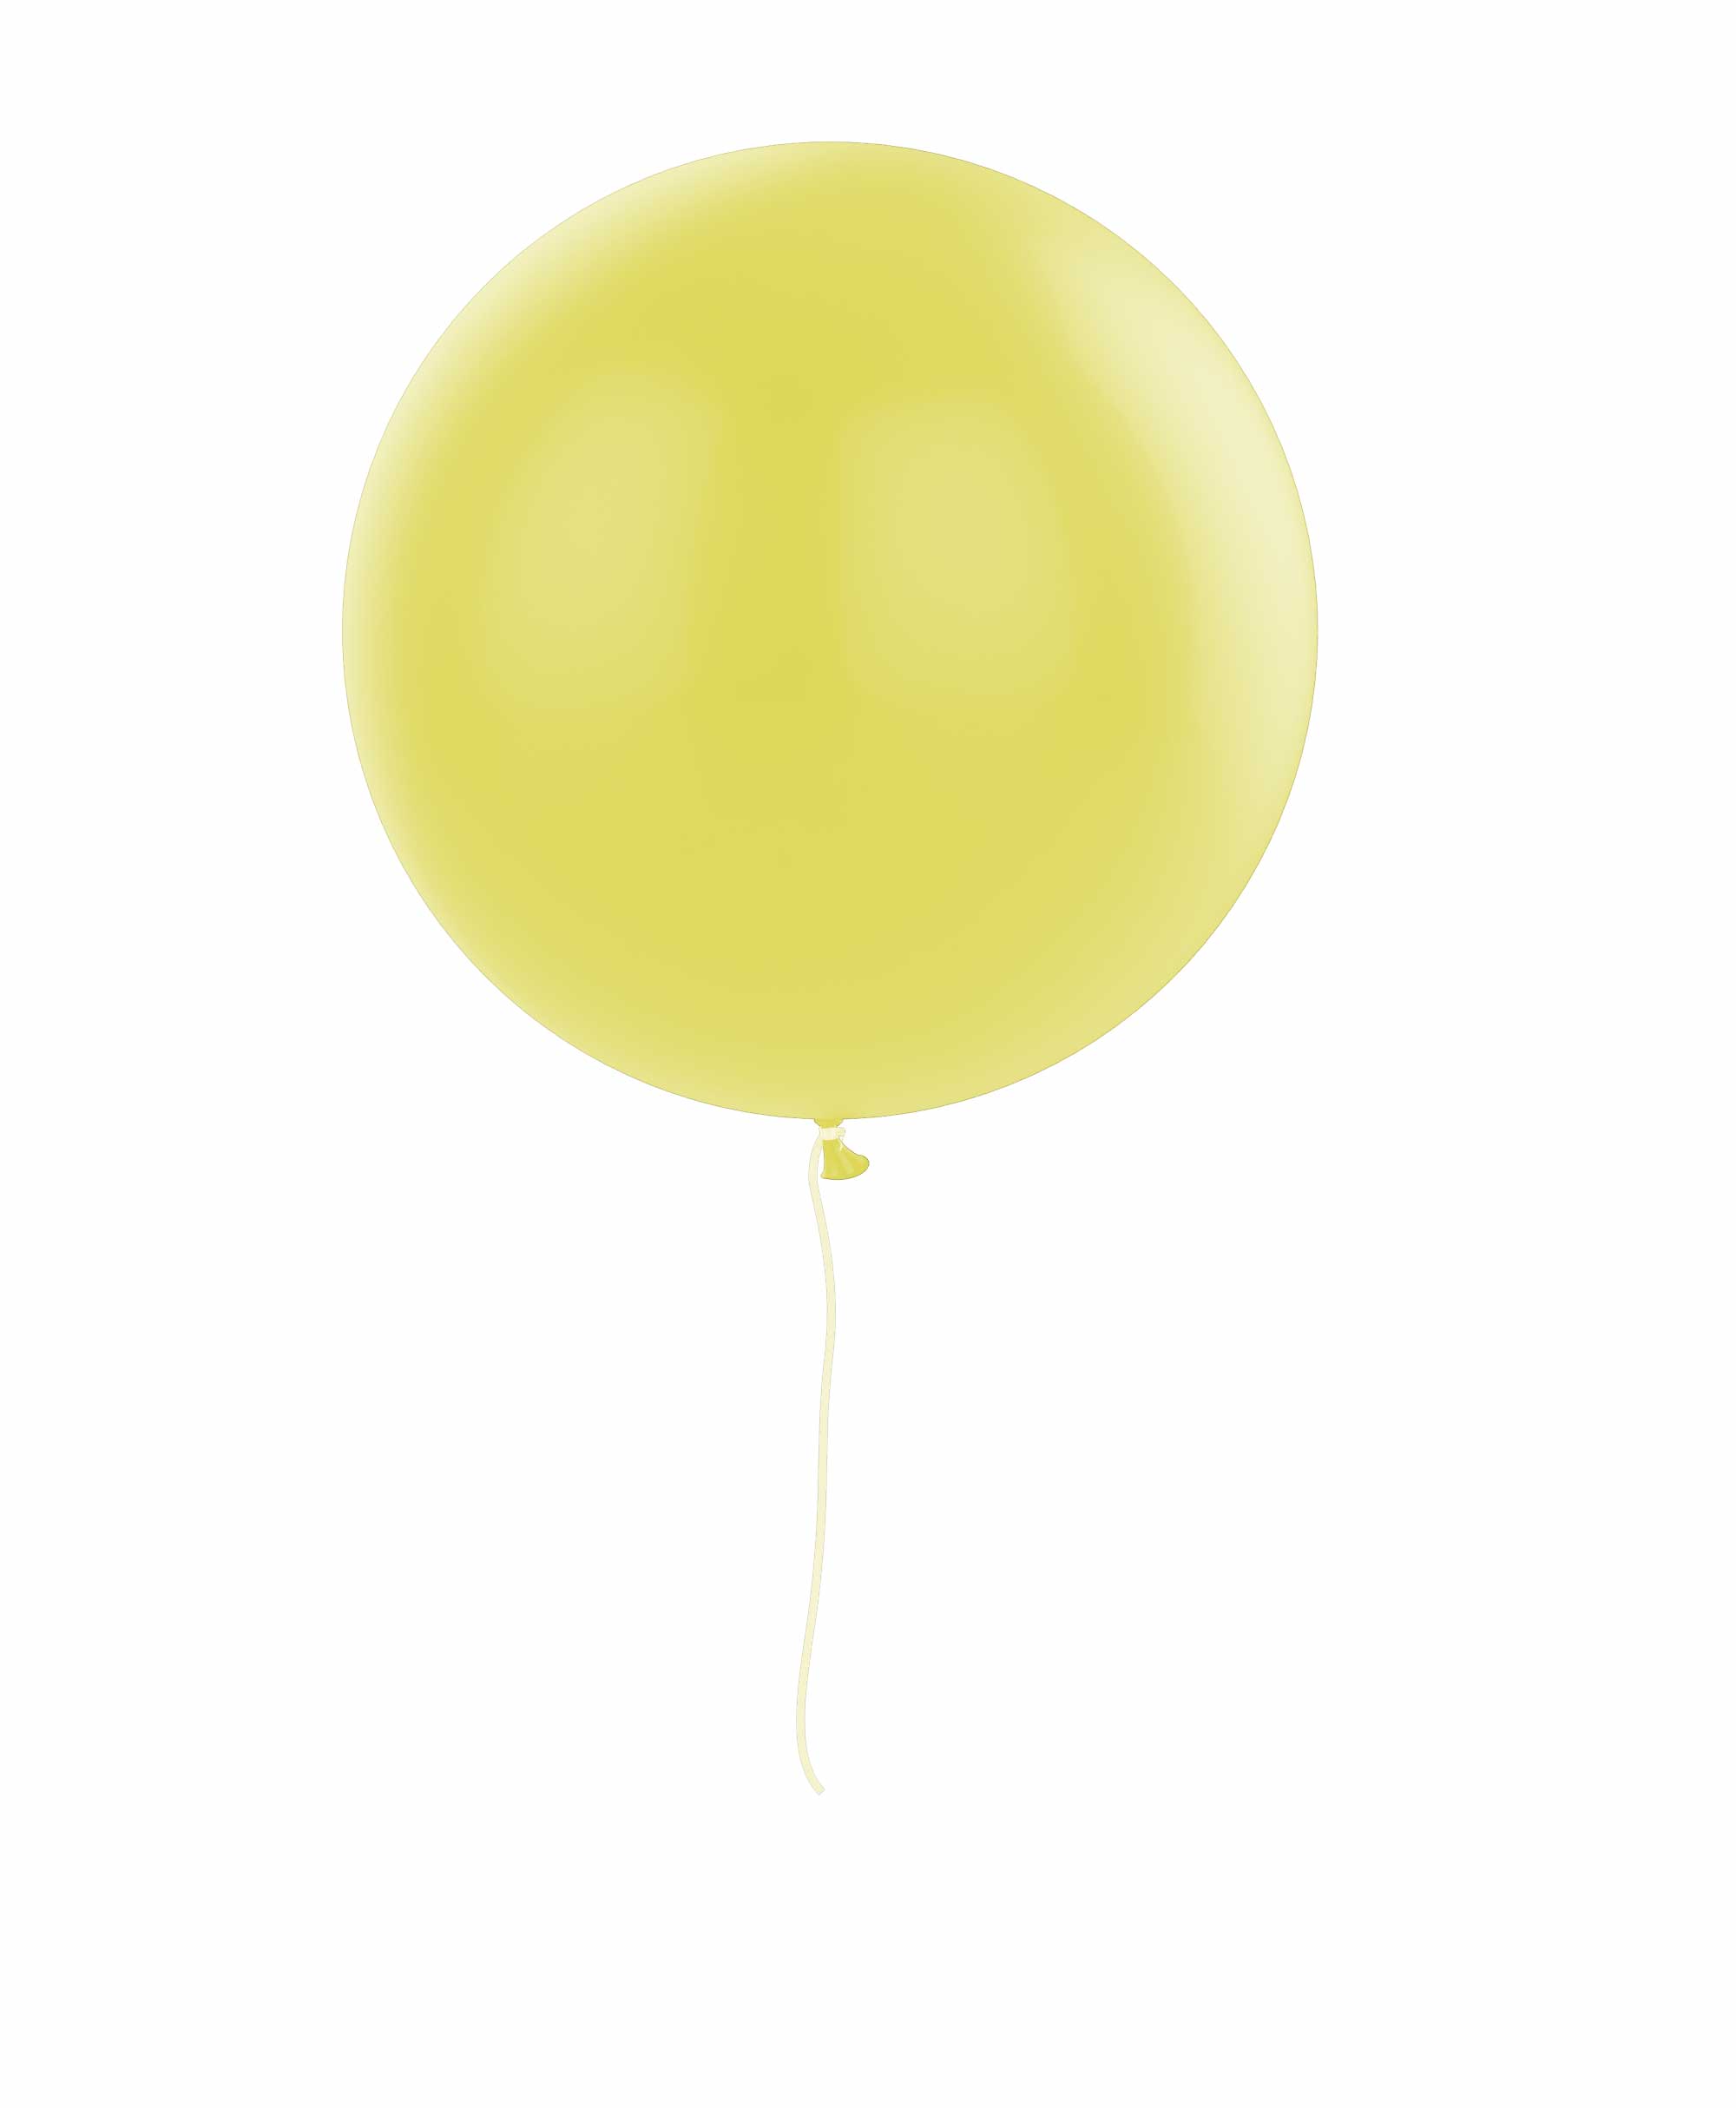 Yellow balloon 36" - Gum nut Theme